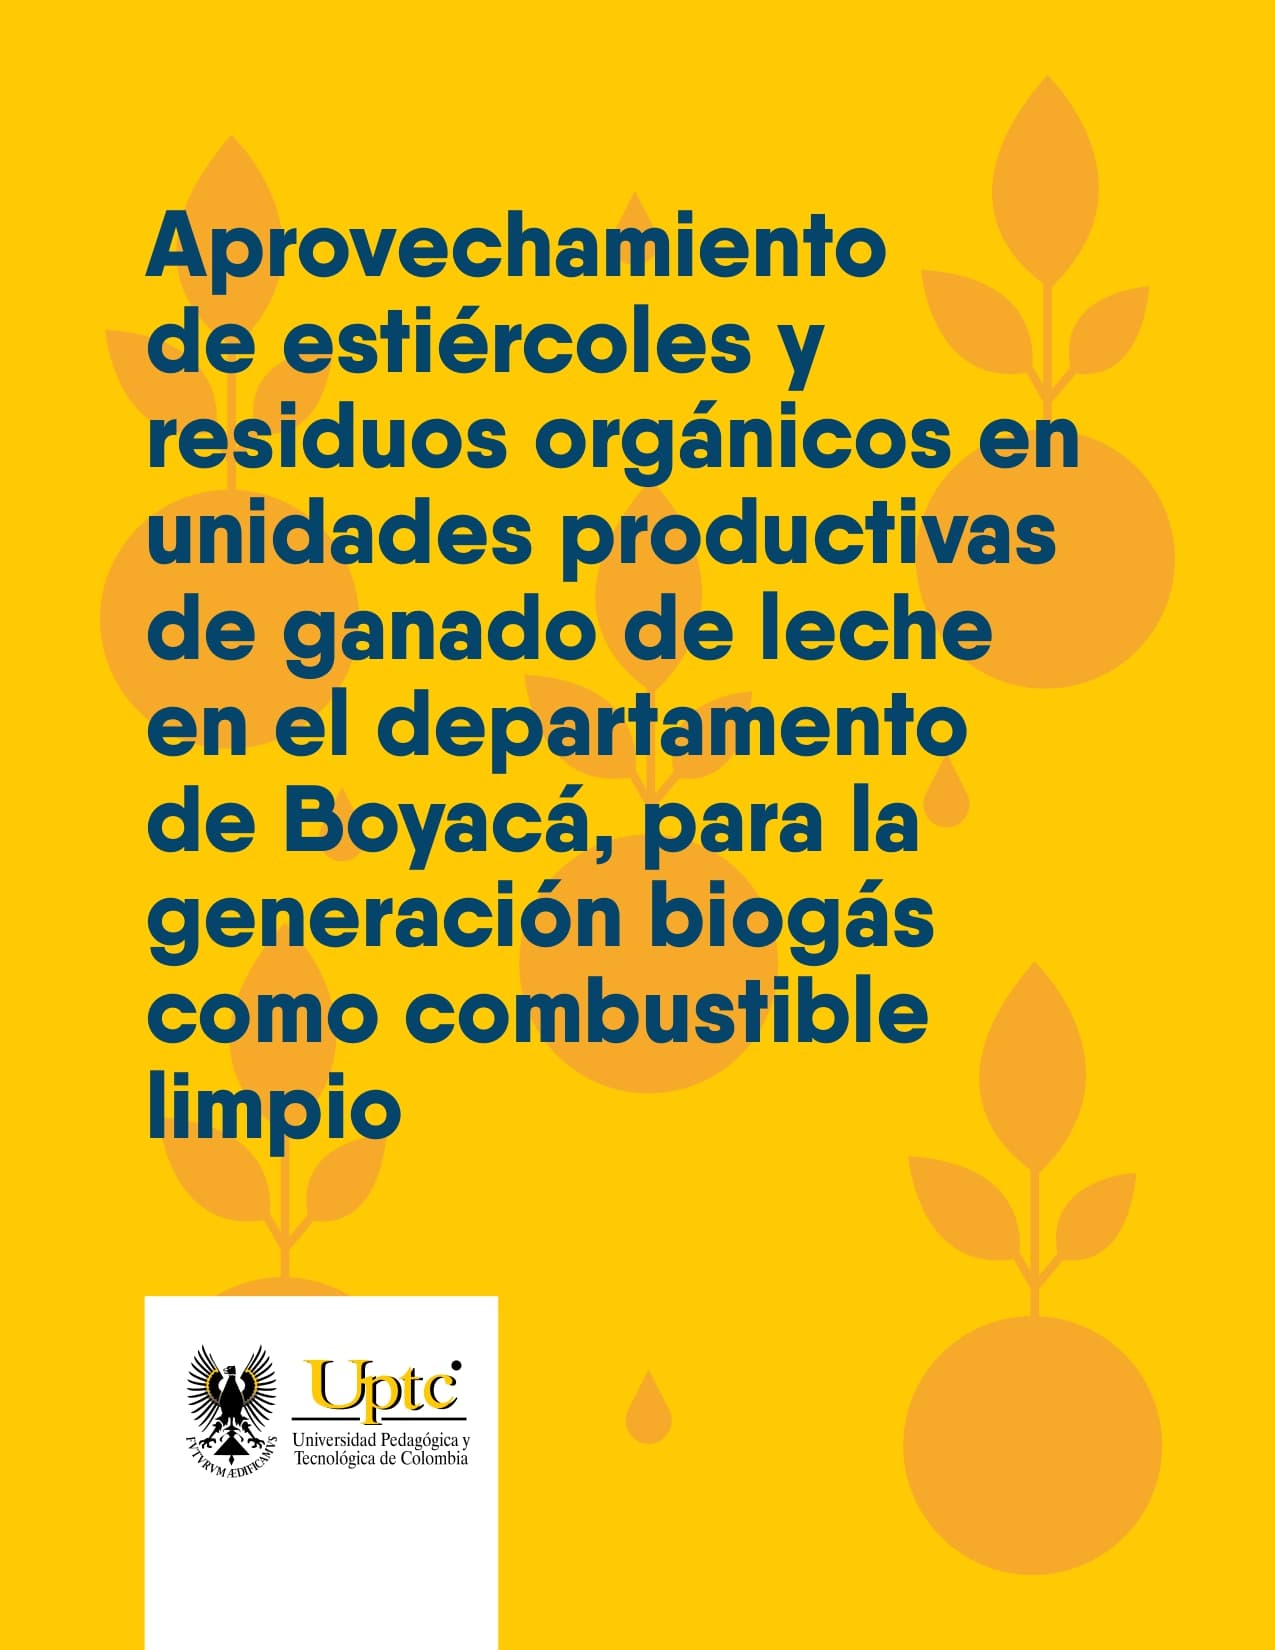 Aprovechamiento de estiércoles y residuos orgánicos en unidades productivas de ganado de leche del departamento de Boyacá